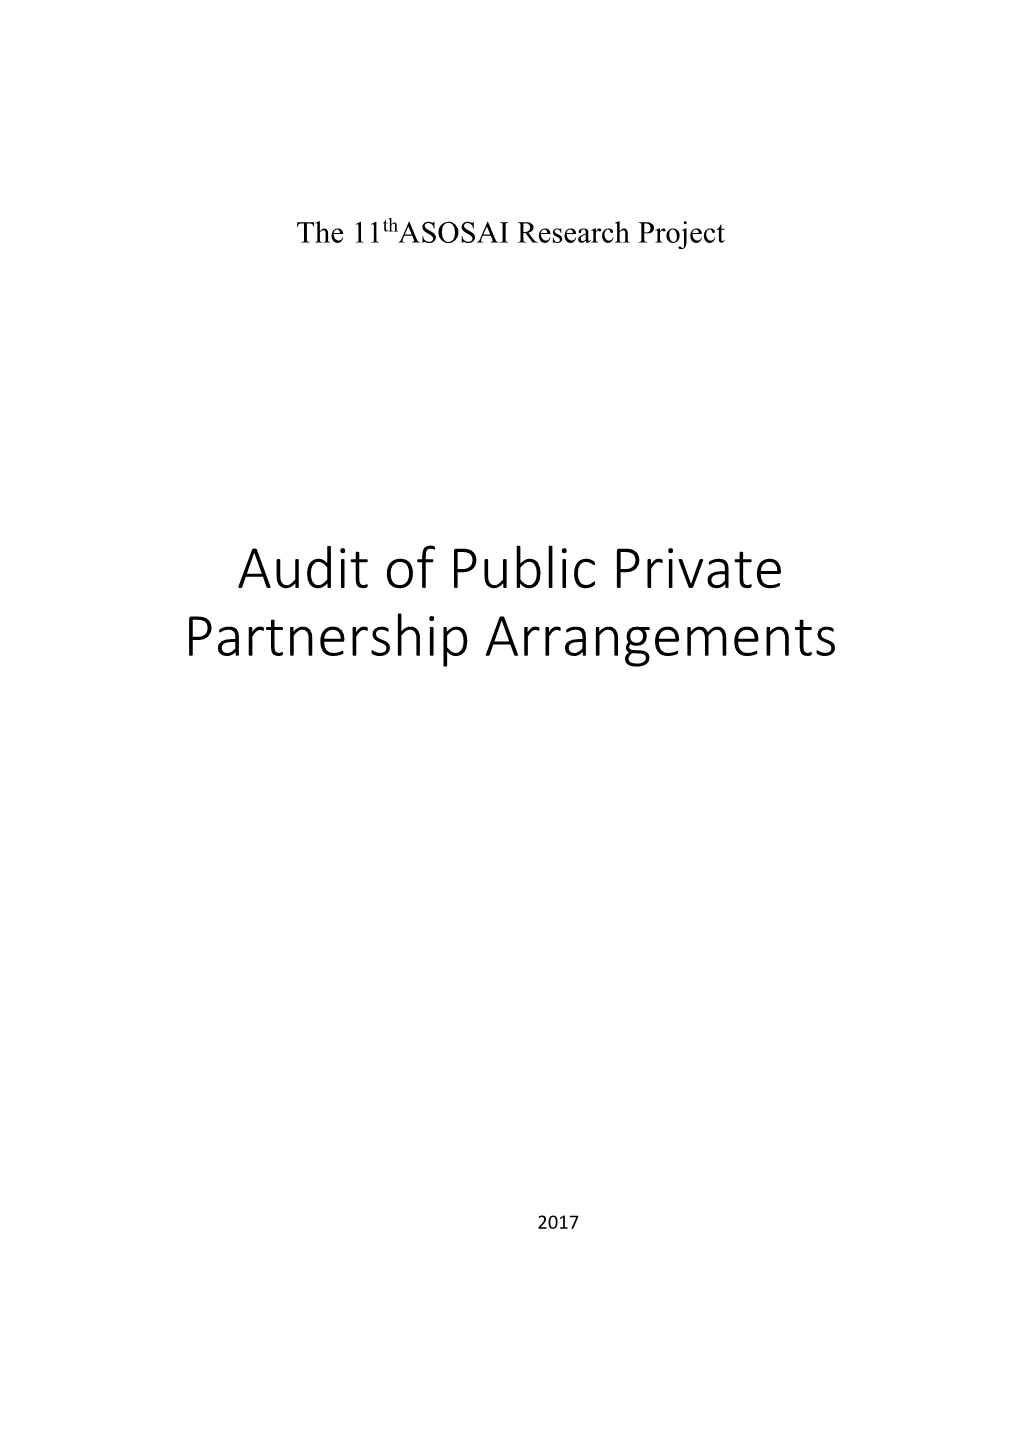 Audit of Public Private Partnership Arrangements